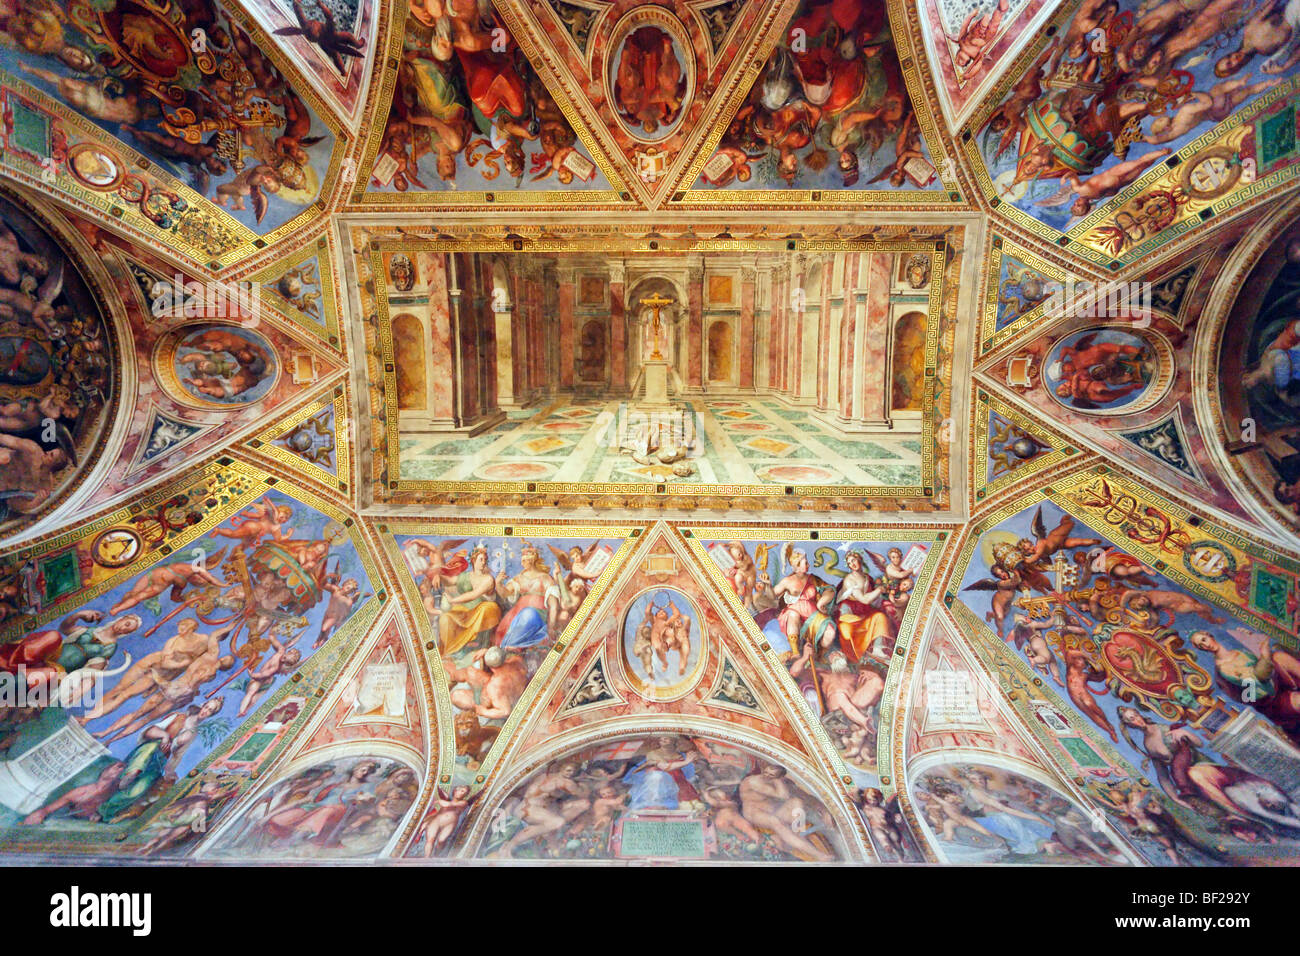 Arches of Sala di Costantino, Stanze di Raffaello, Vatican Museums, Vatican City, Rome, Italy Stock Photo